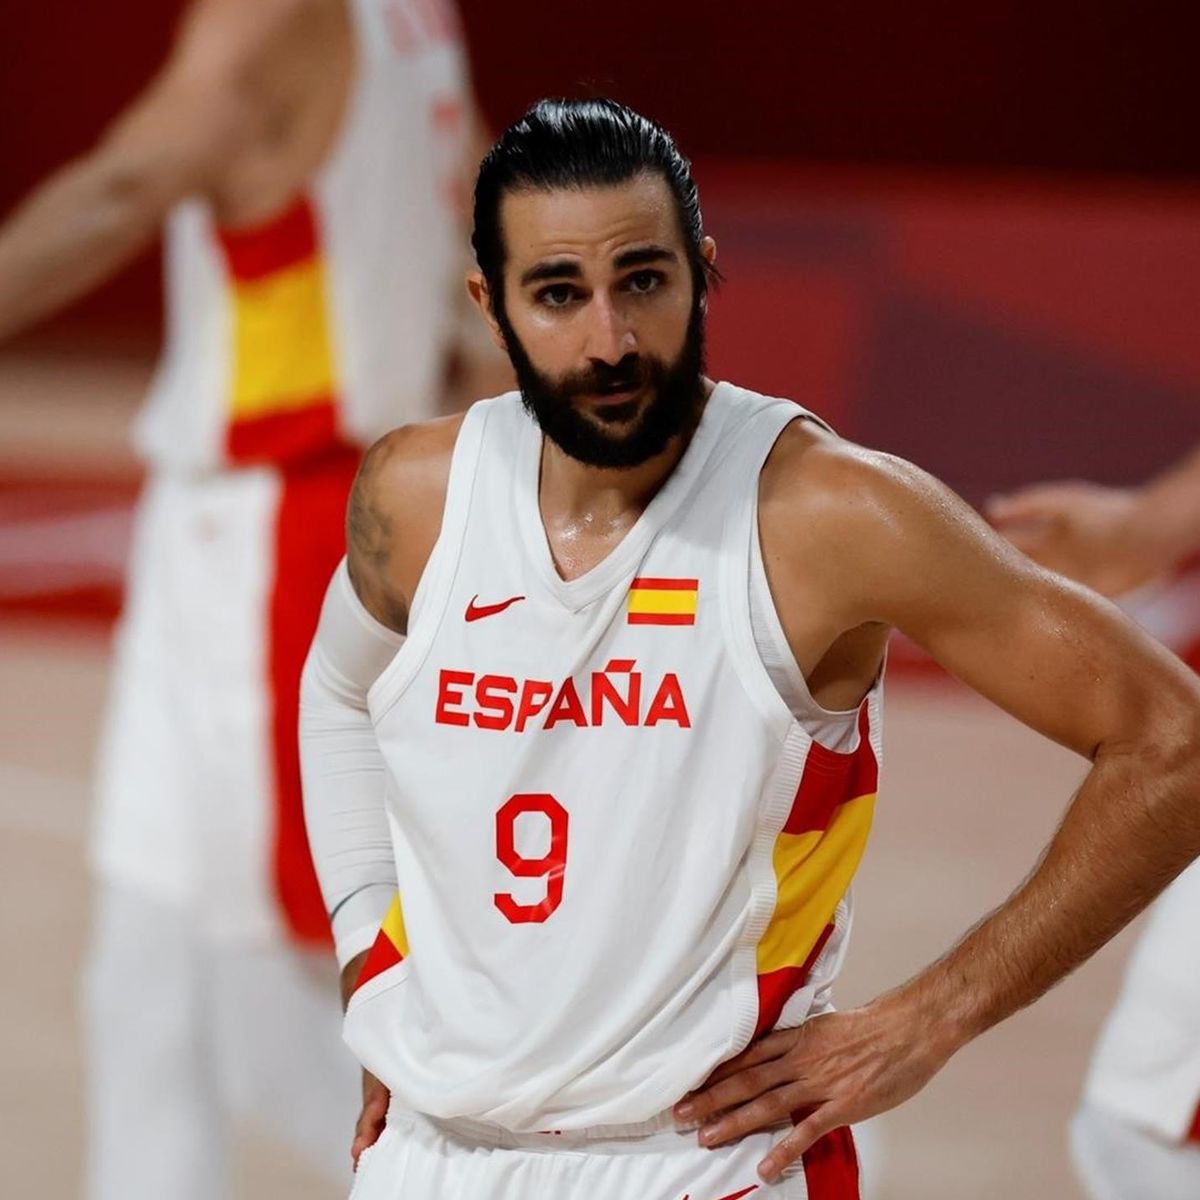 Juegos Olímpicos Tokio 2020, Baloncesto | El futuro de la selección española:  ¿Hay relevo generacional? - Eurosport